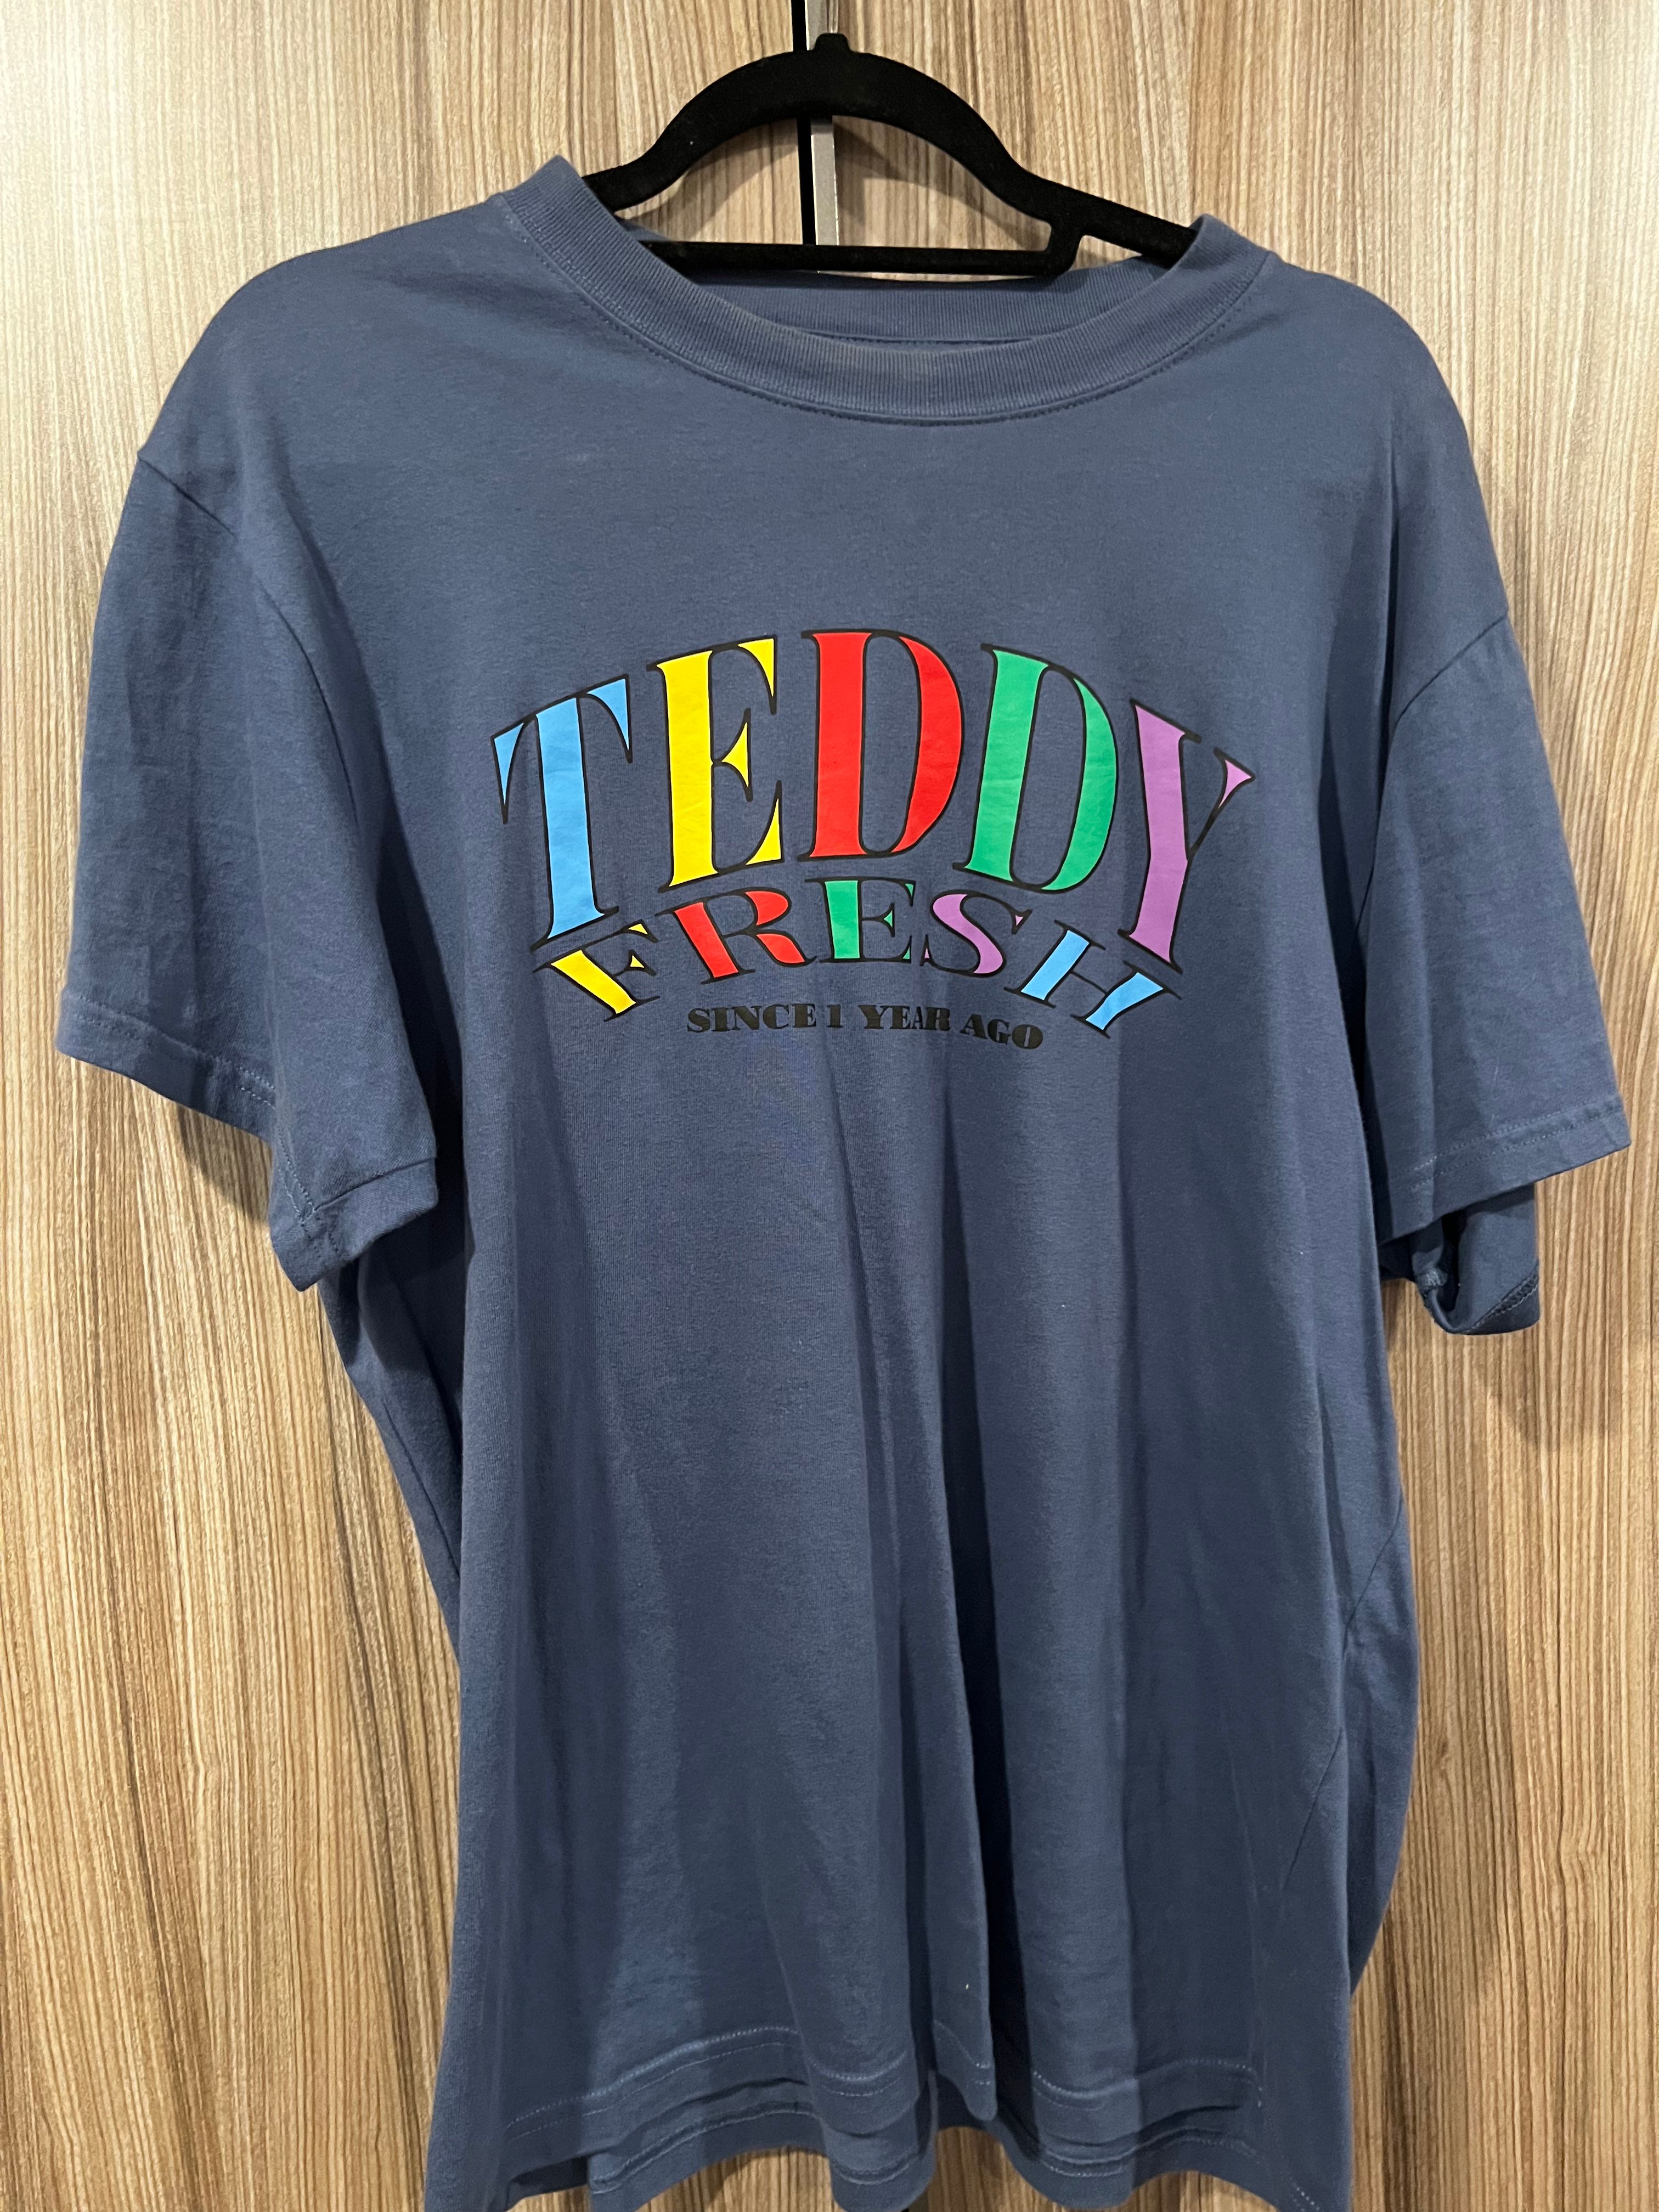 Teddy Fresh Teddy Fresh 1 Year Anniversary Shirt Size US XL / EU 56 / 4 - 1 Preview